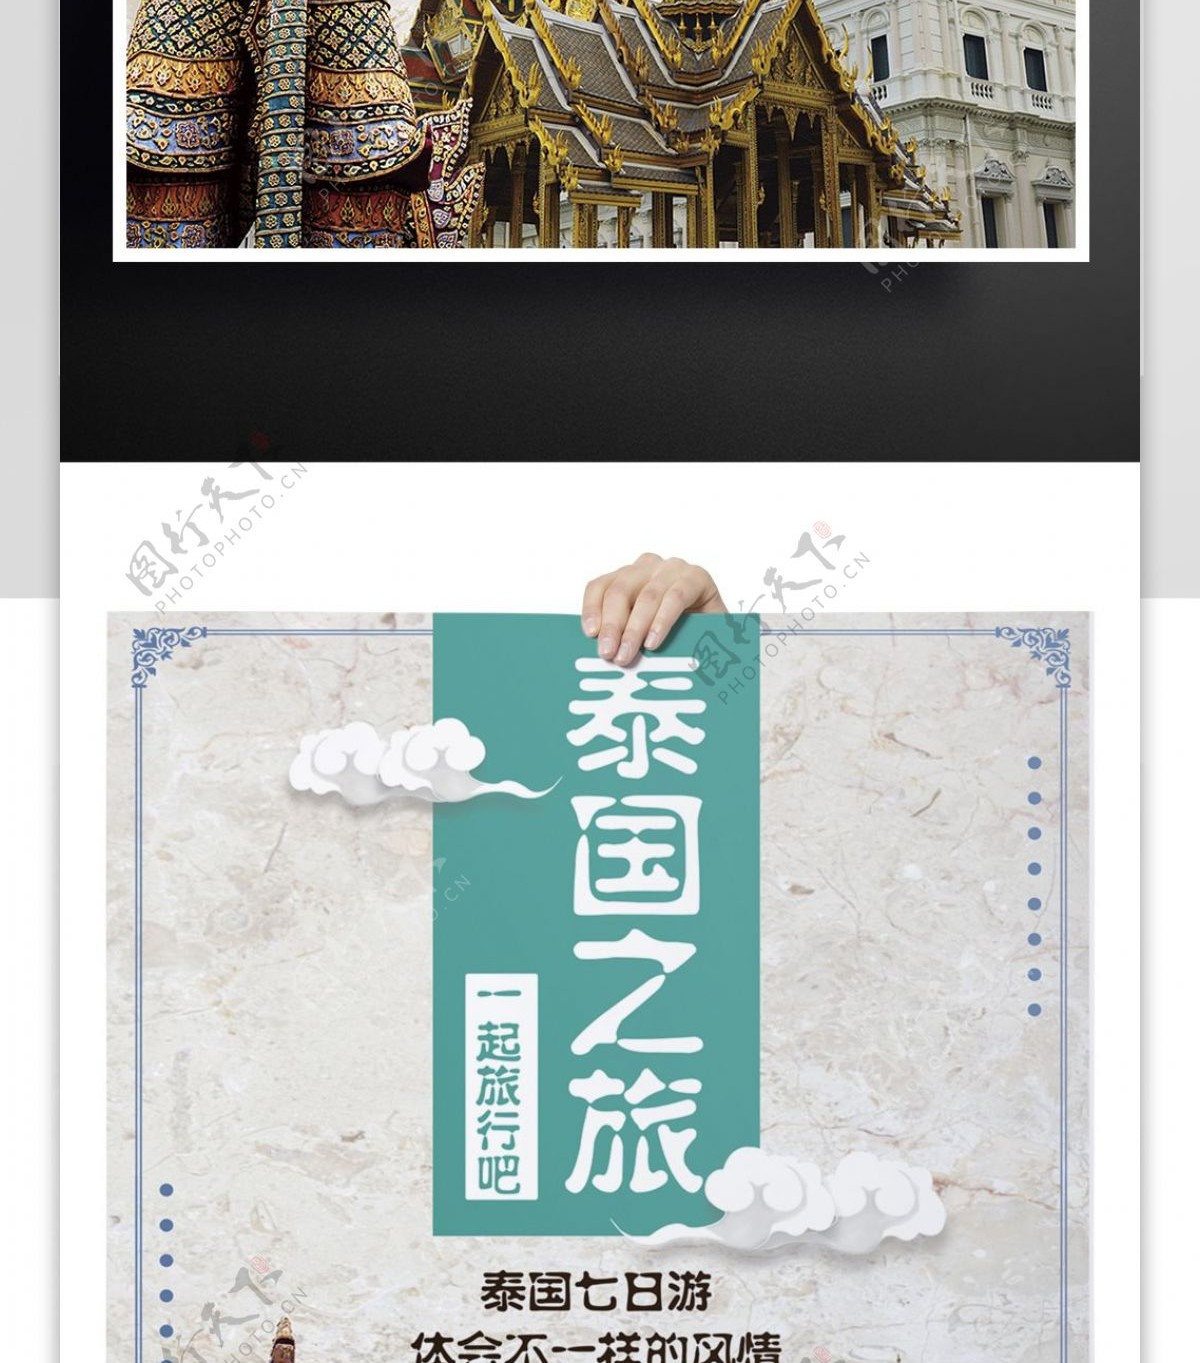 清新时尚泰国旅行宣传海报设计